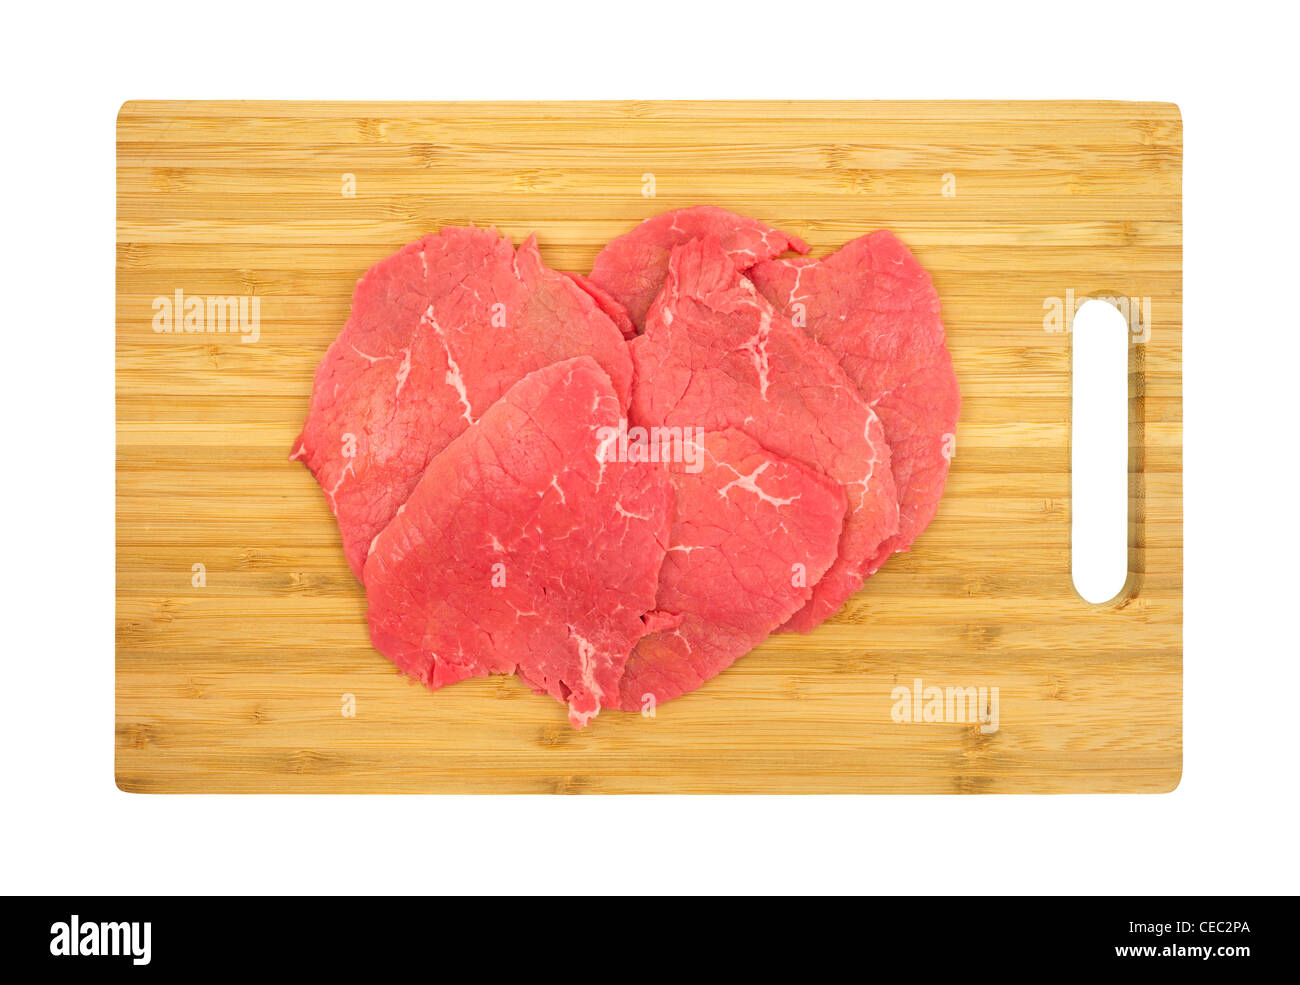 Beef eye round steak Stock Photo